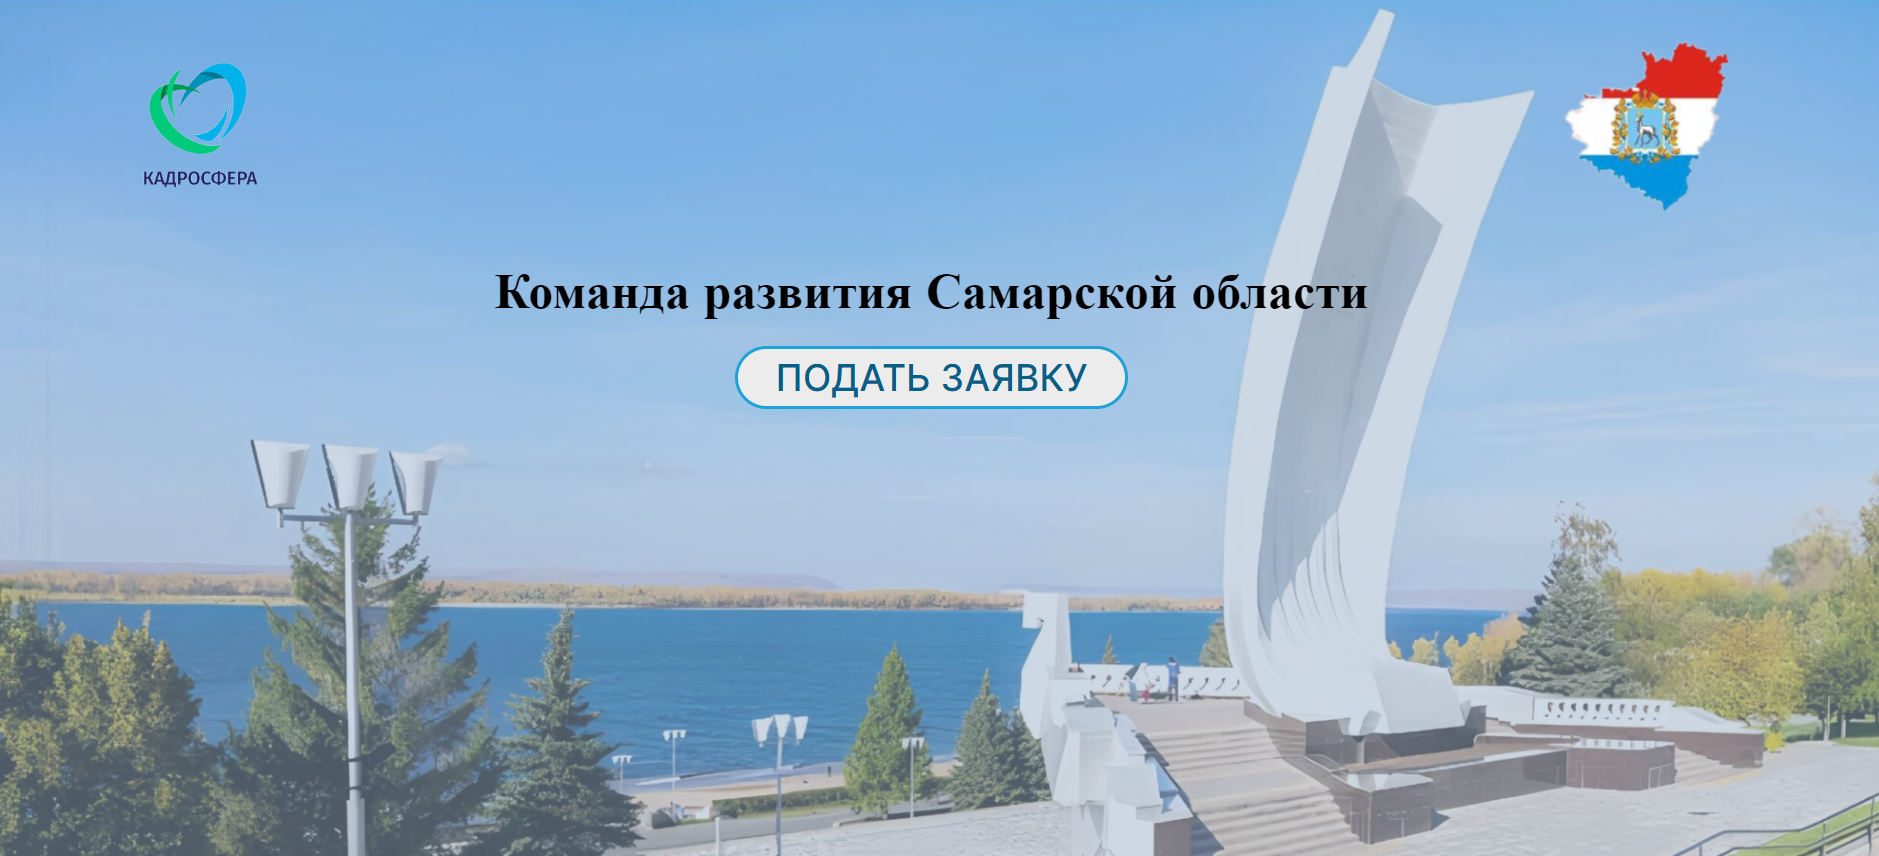 Информационная система подачи заявок в команду развития Самарской области